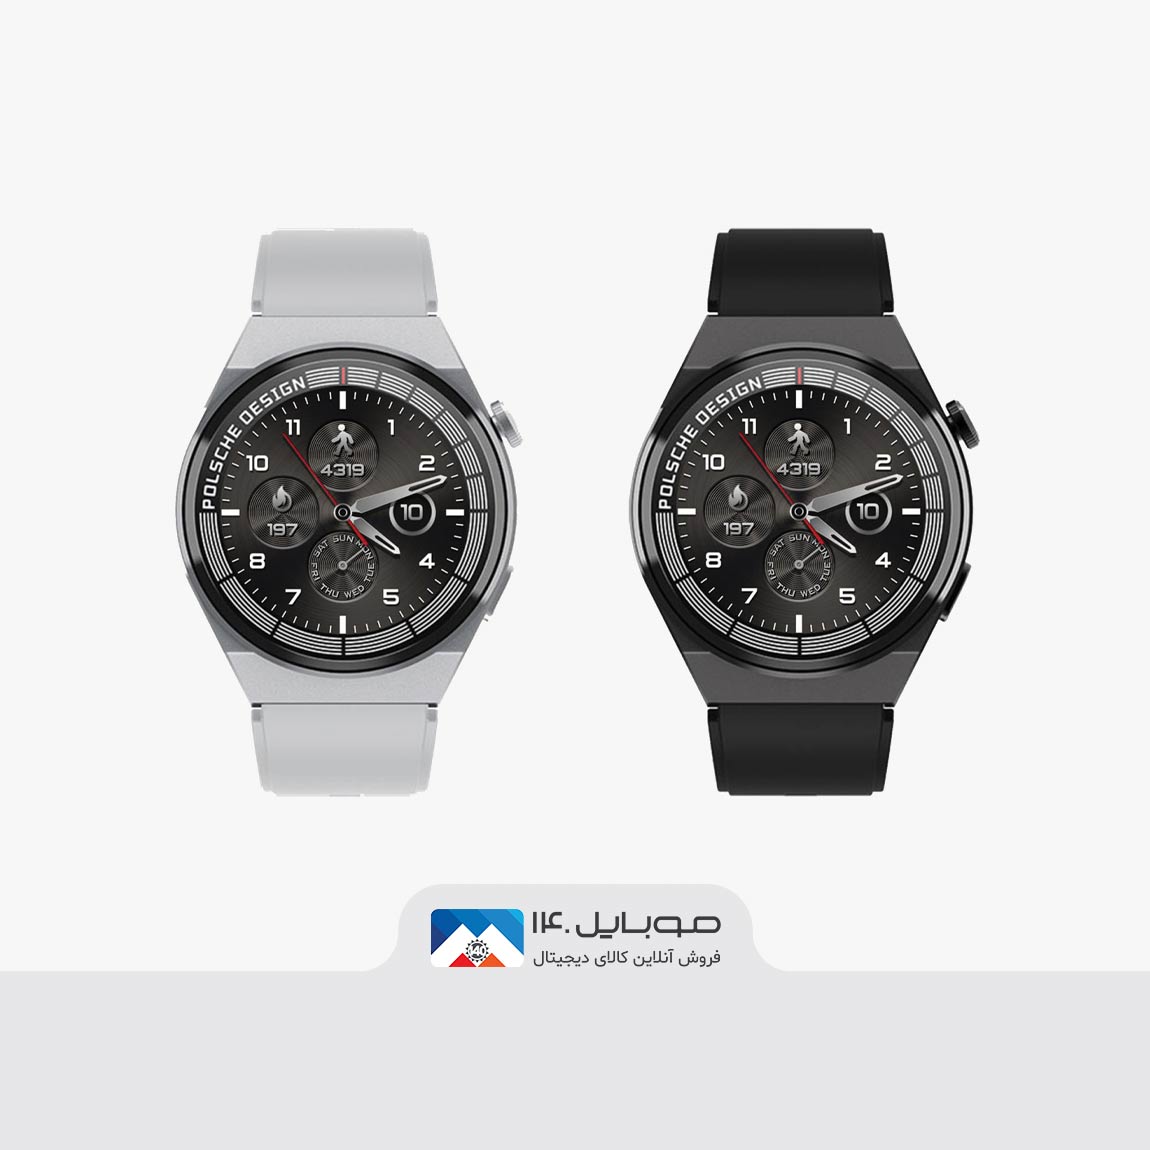 Hivami Tian 7 Smart Watch 3